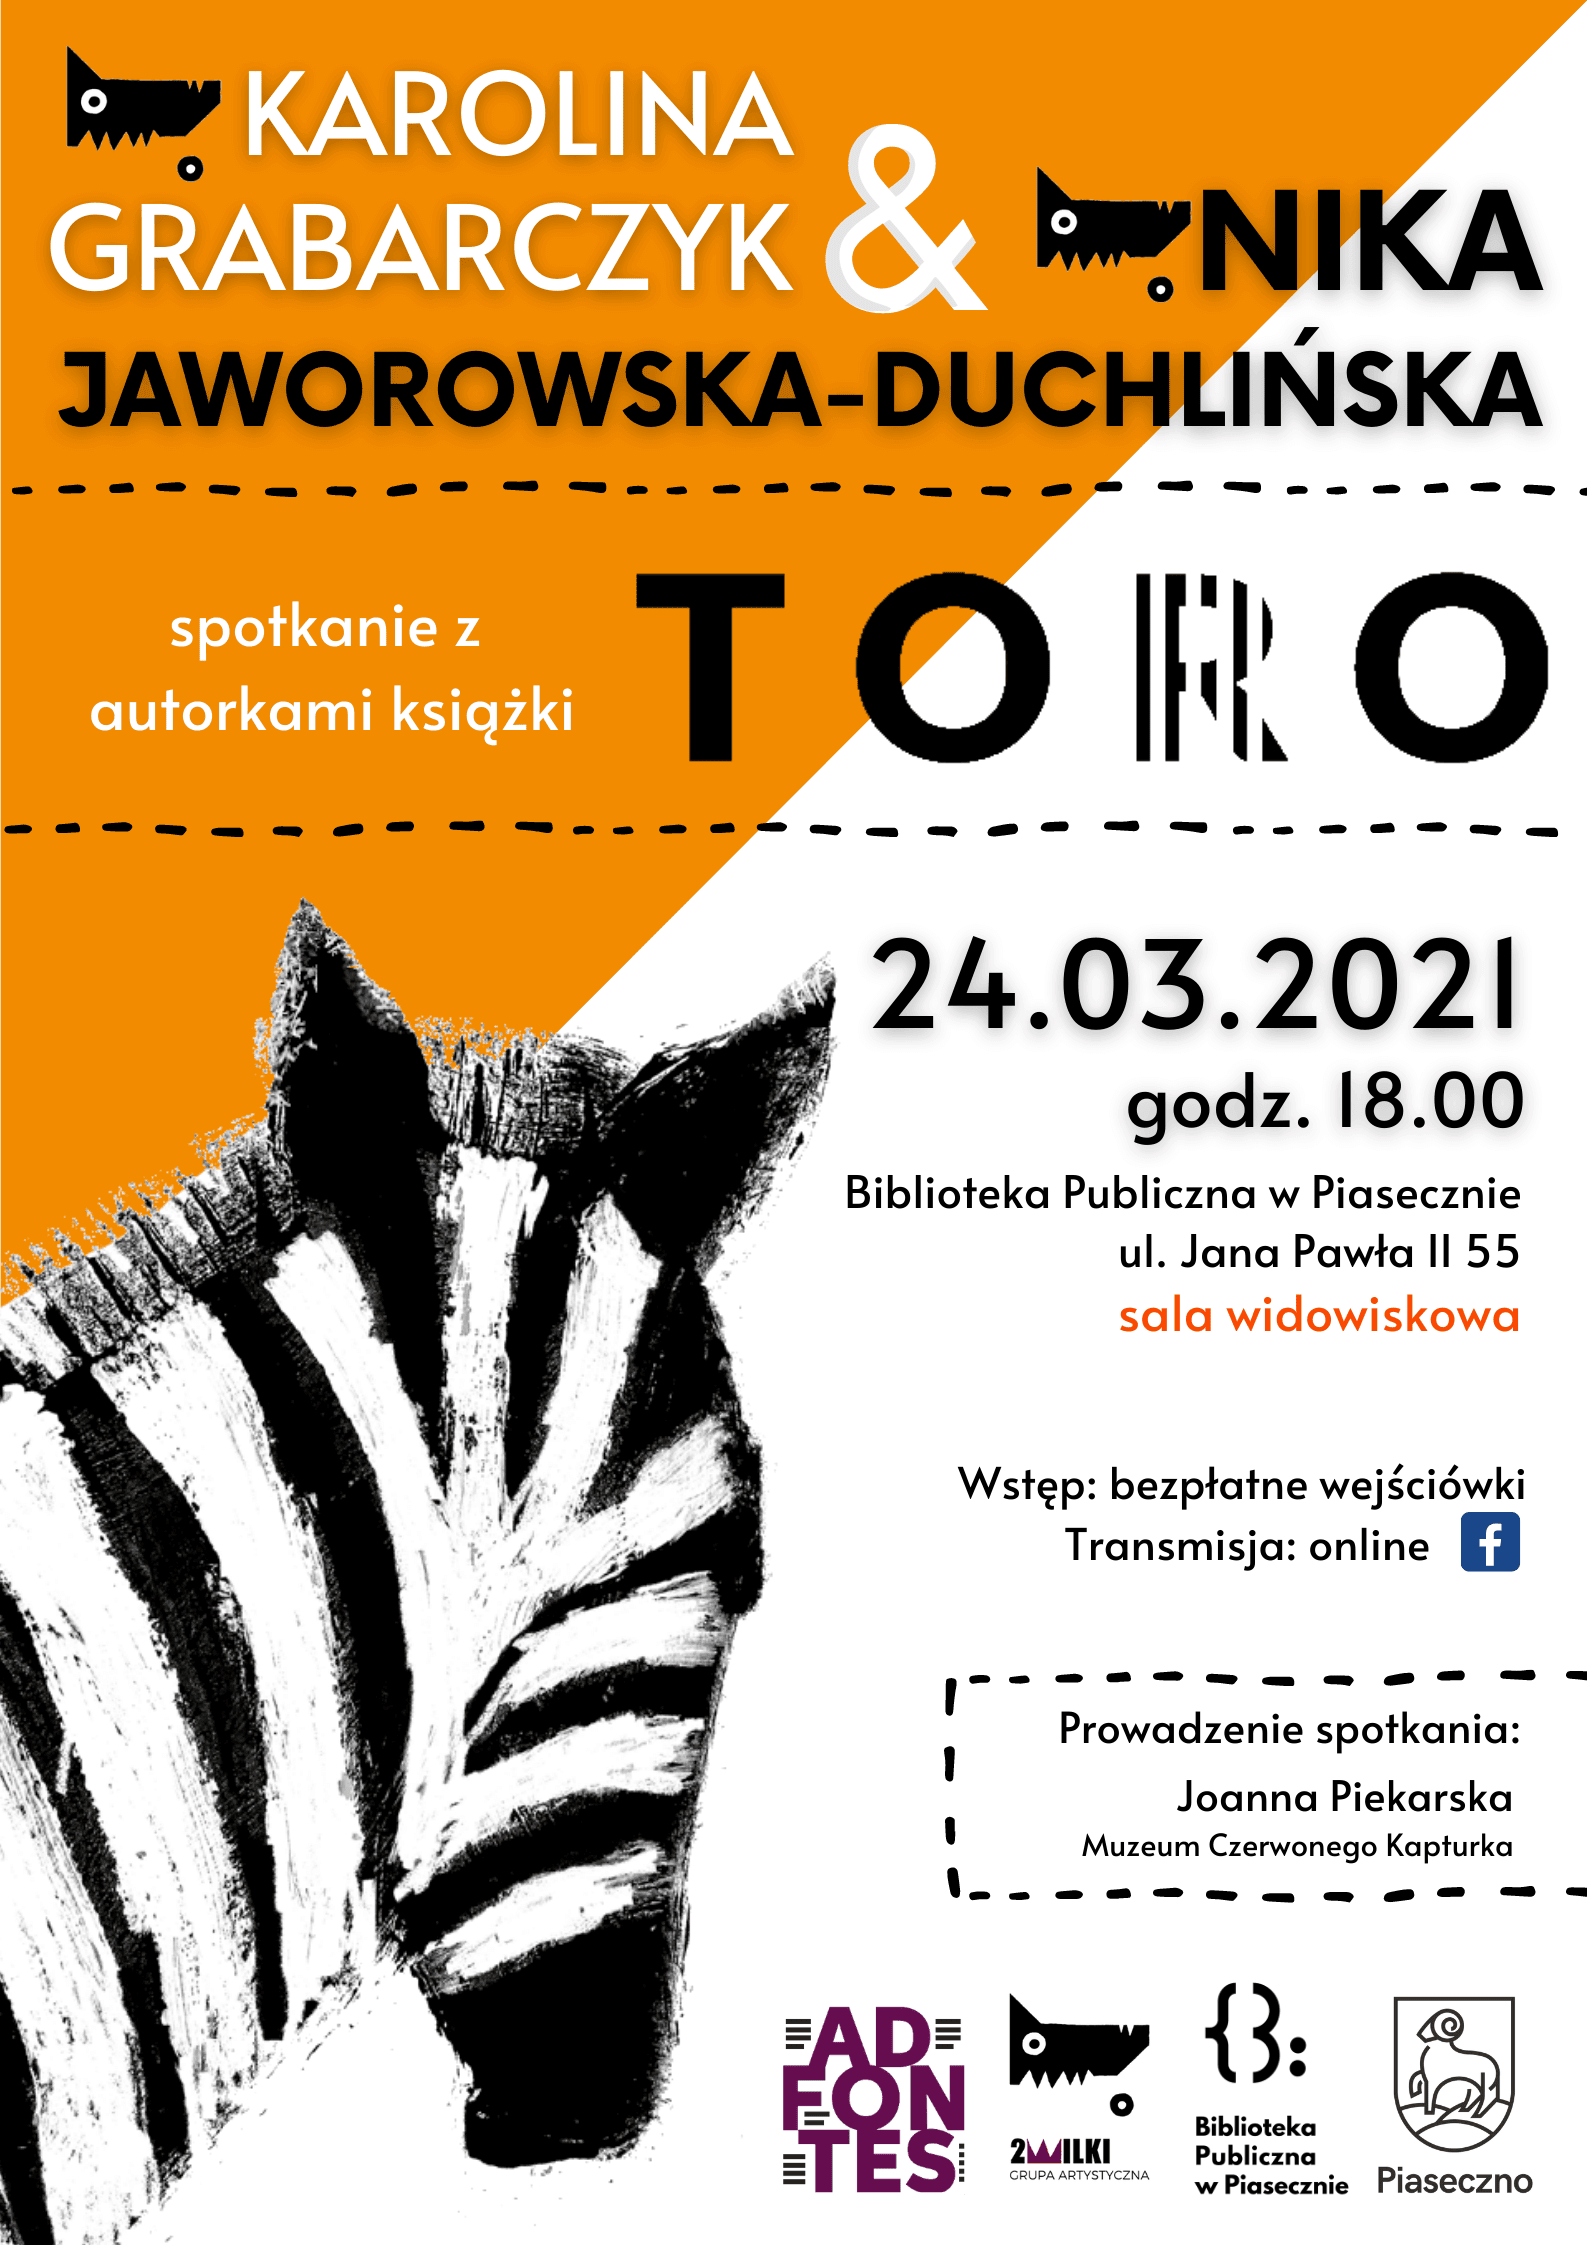 Spotkanie Autorskie "Toro" 24.03.2021 - plakat informujący o spotkaniu